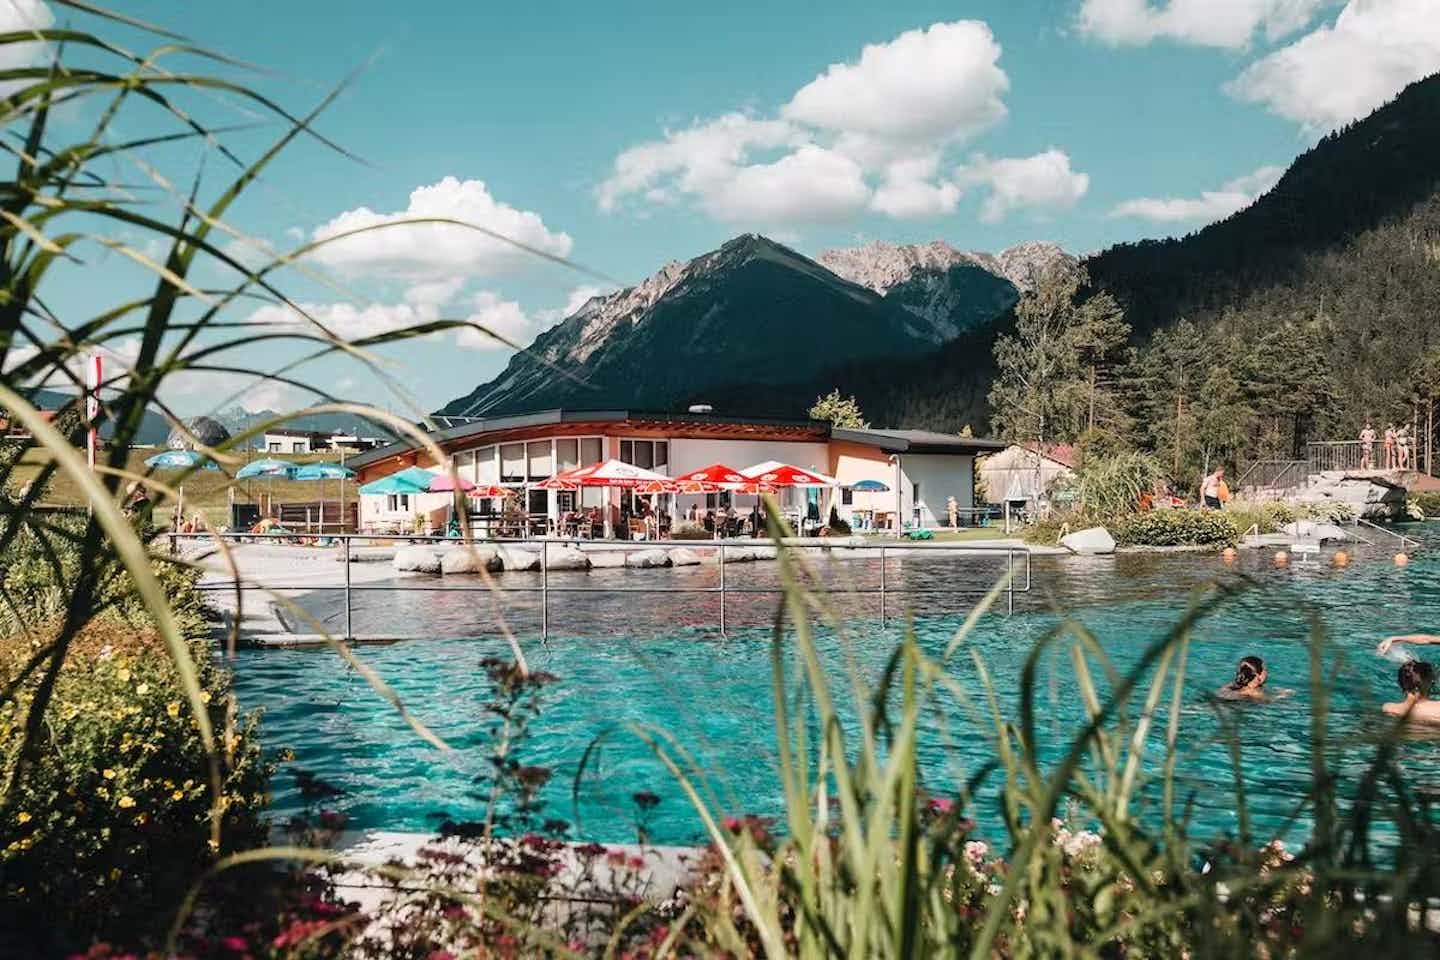 Camping avec piscine en Autriche